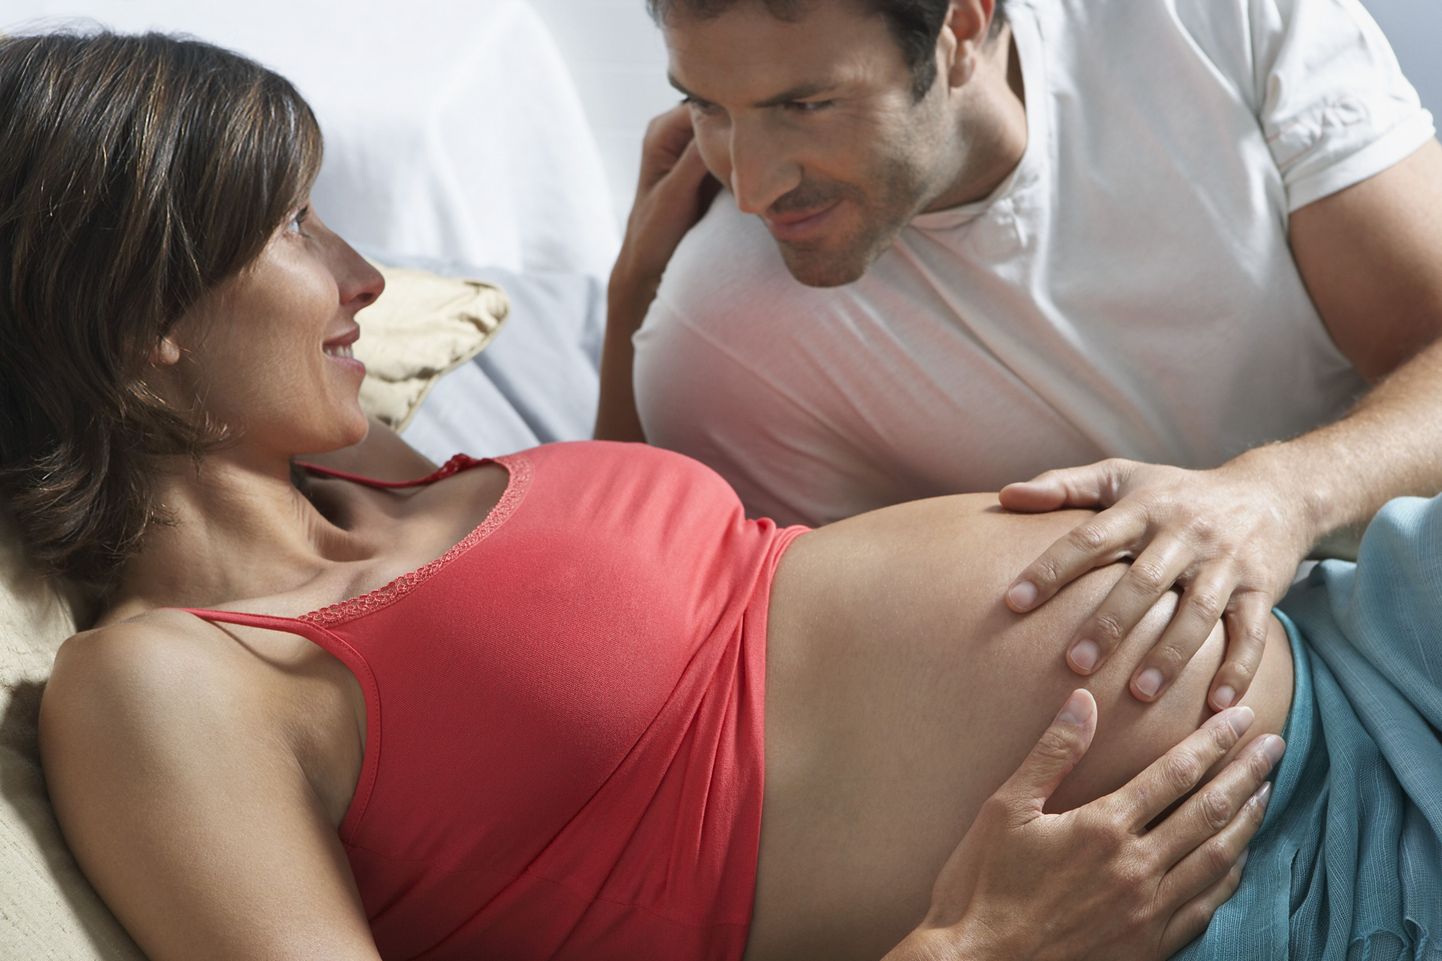 Nurjunud rasedus paneb suhte karmilt proovile.